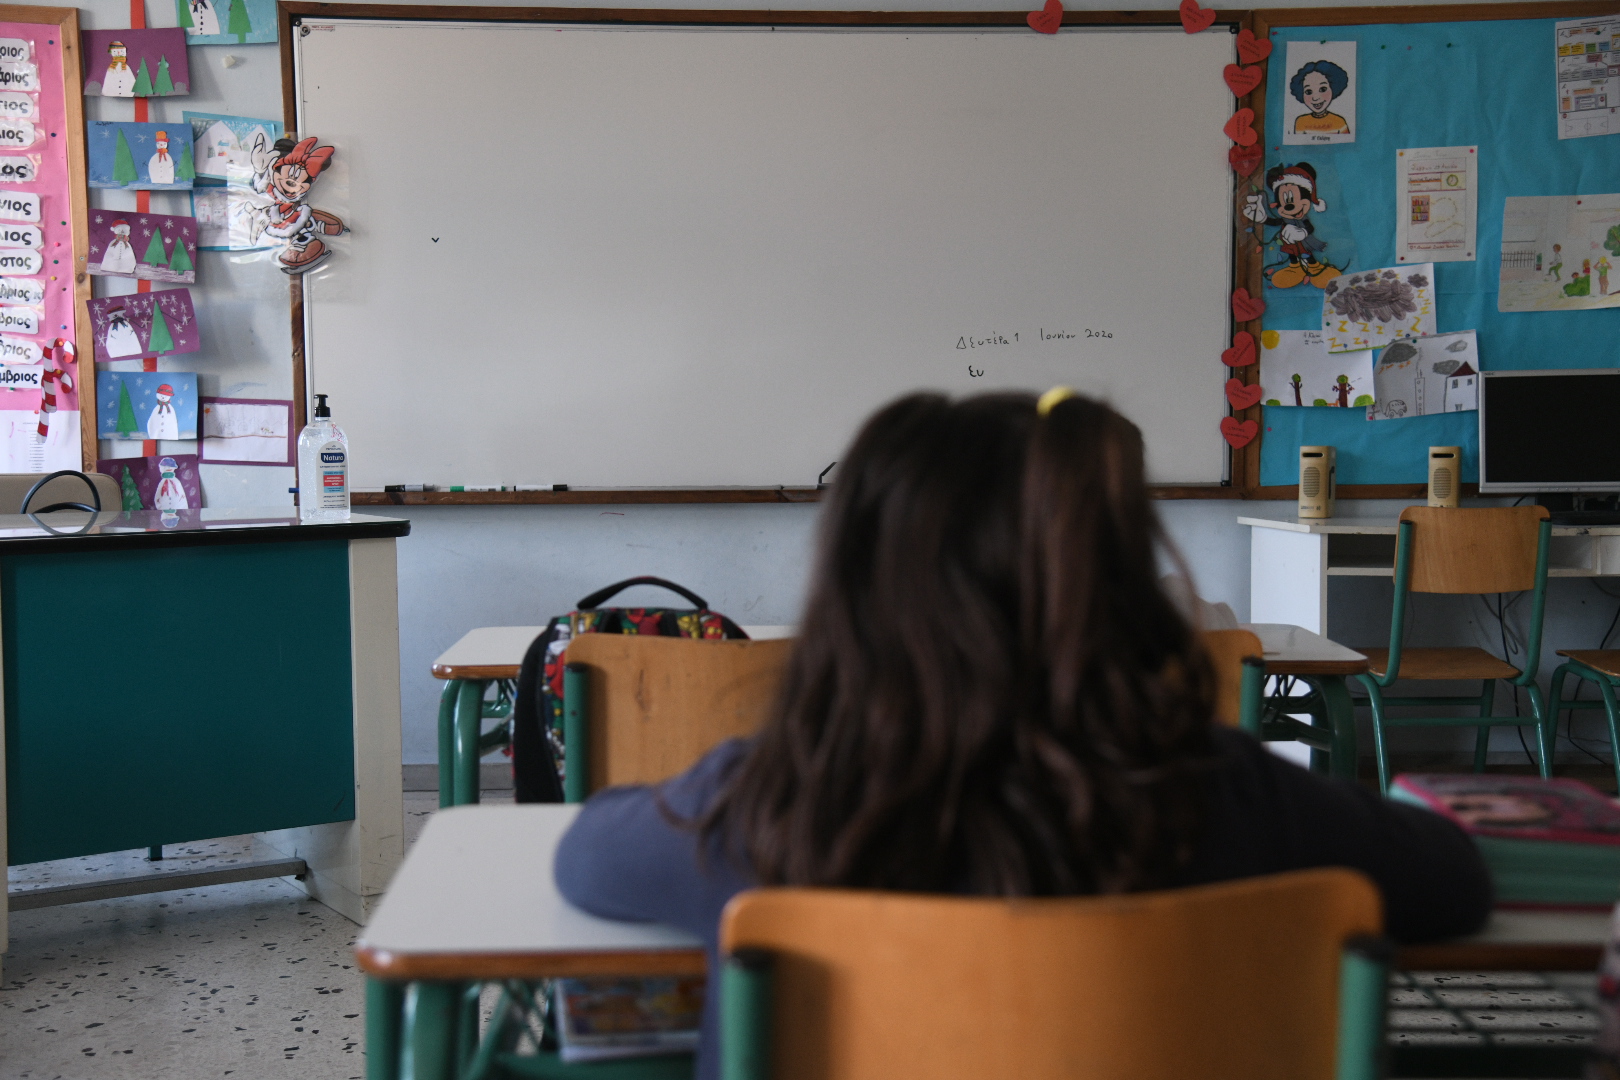 1ο Δημοτικό Σχολείο Βούλας: Τμήμα παραμένει χωρίς δάσκαλο εδώ και περίπου έναν μήνα